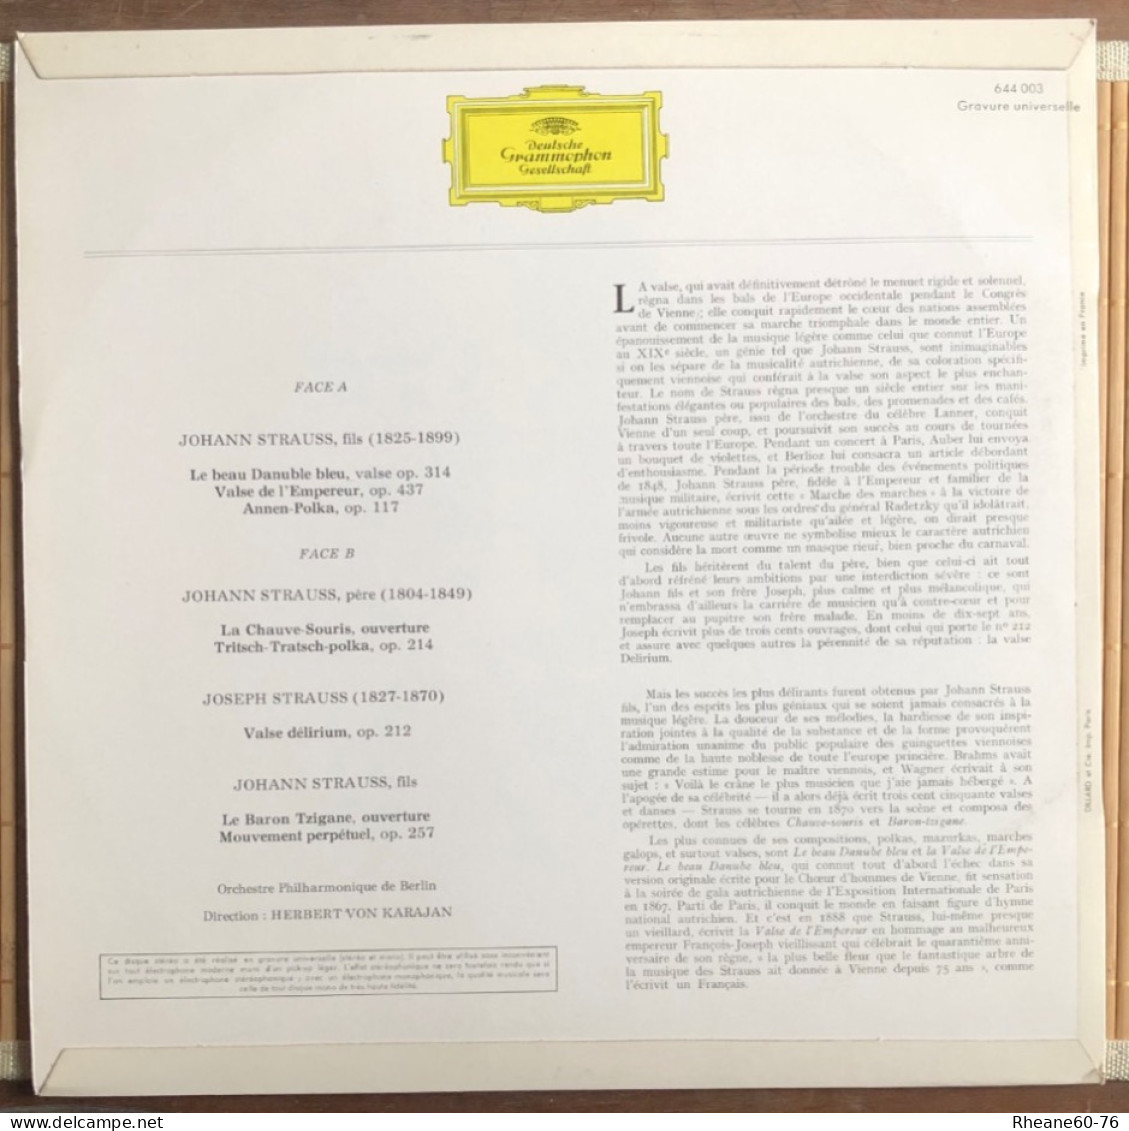 33T A Vienne Au Temps Des Strauss - Herbert Von Karajan Orchestre Philharmonique De Berlin - 644003 Deutsche Grammophon - Weihnachtslieder